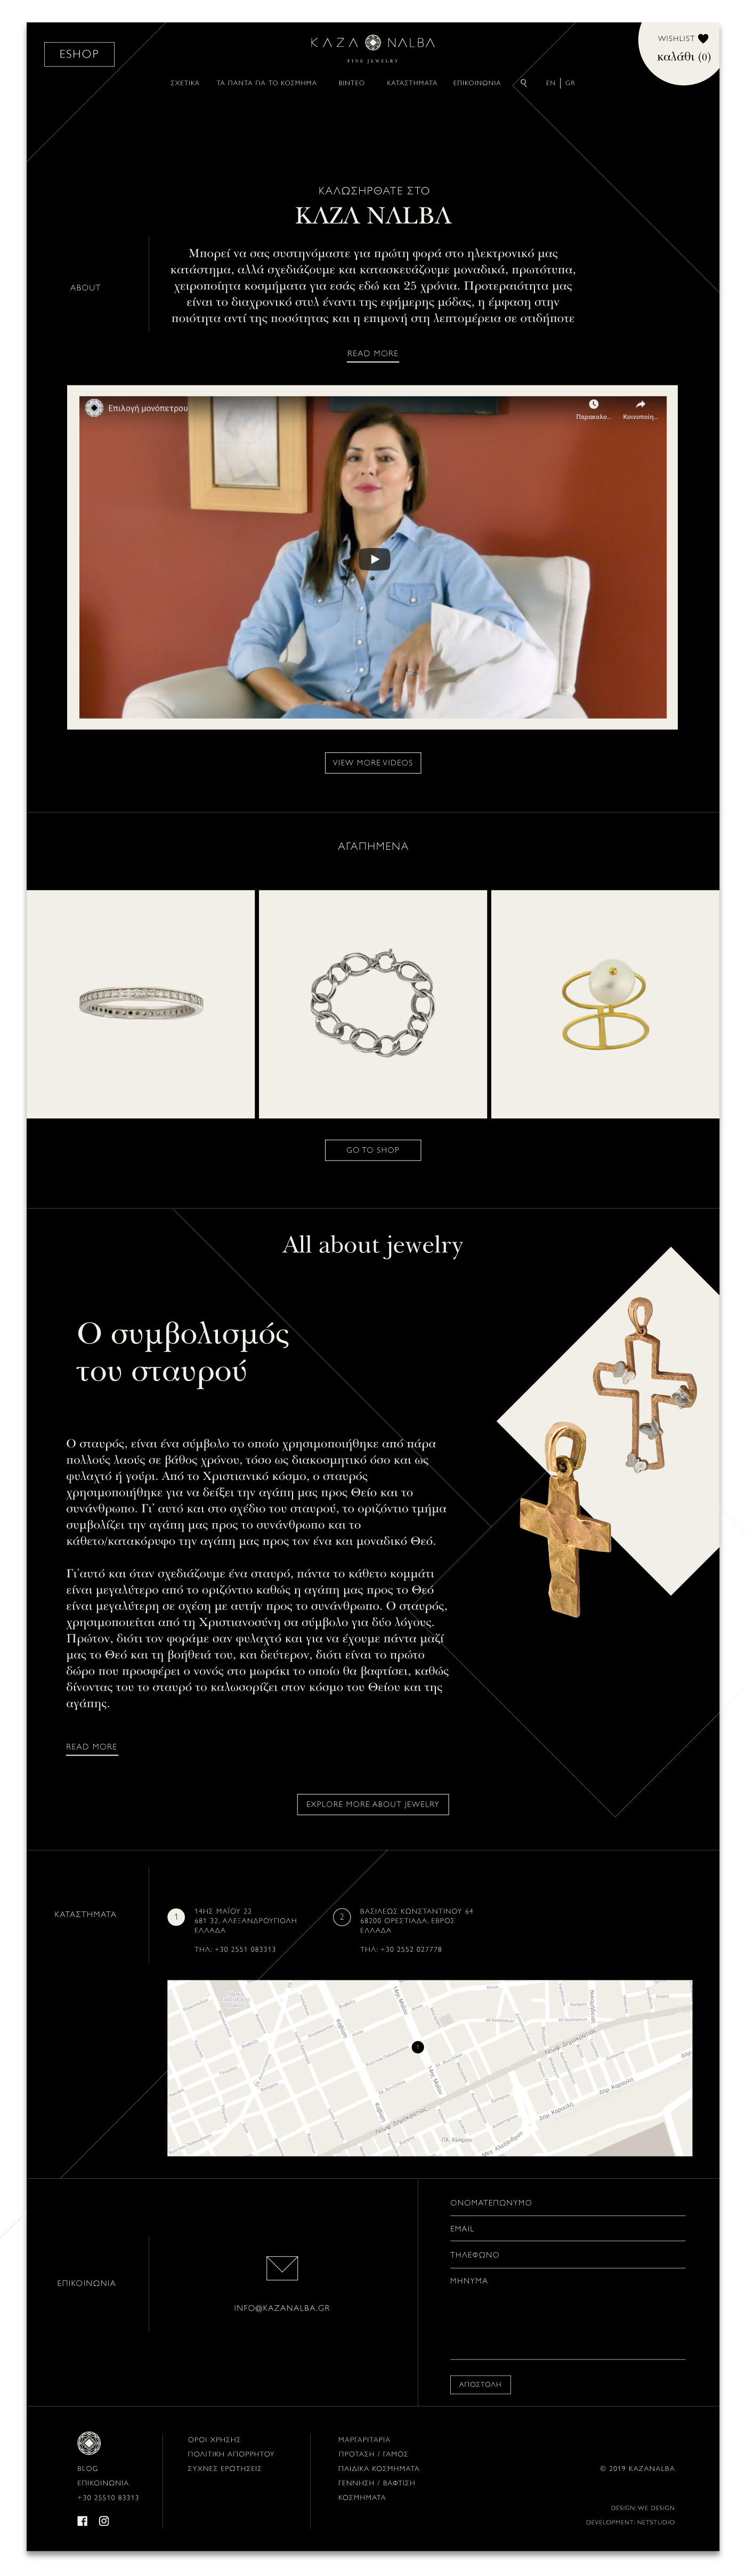 eshop fine jewelry graphic design  handmade Jewellery jewelry Web Design  Website